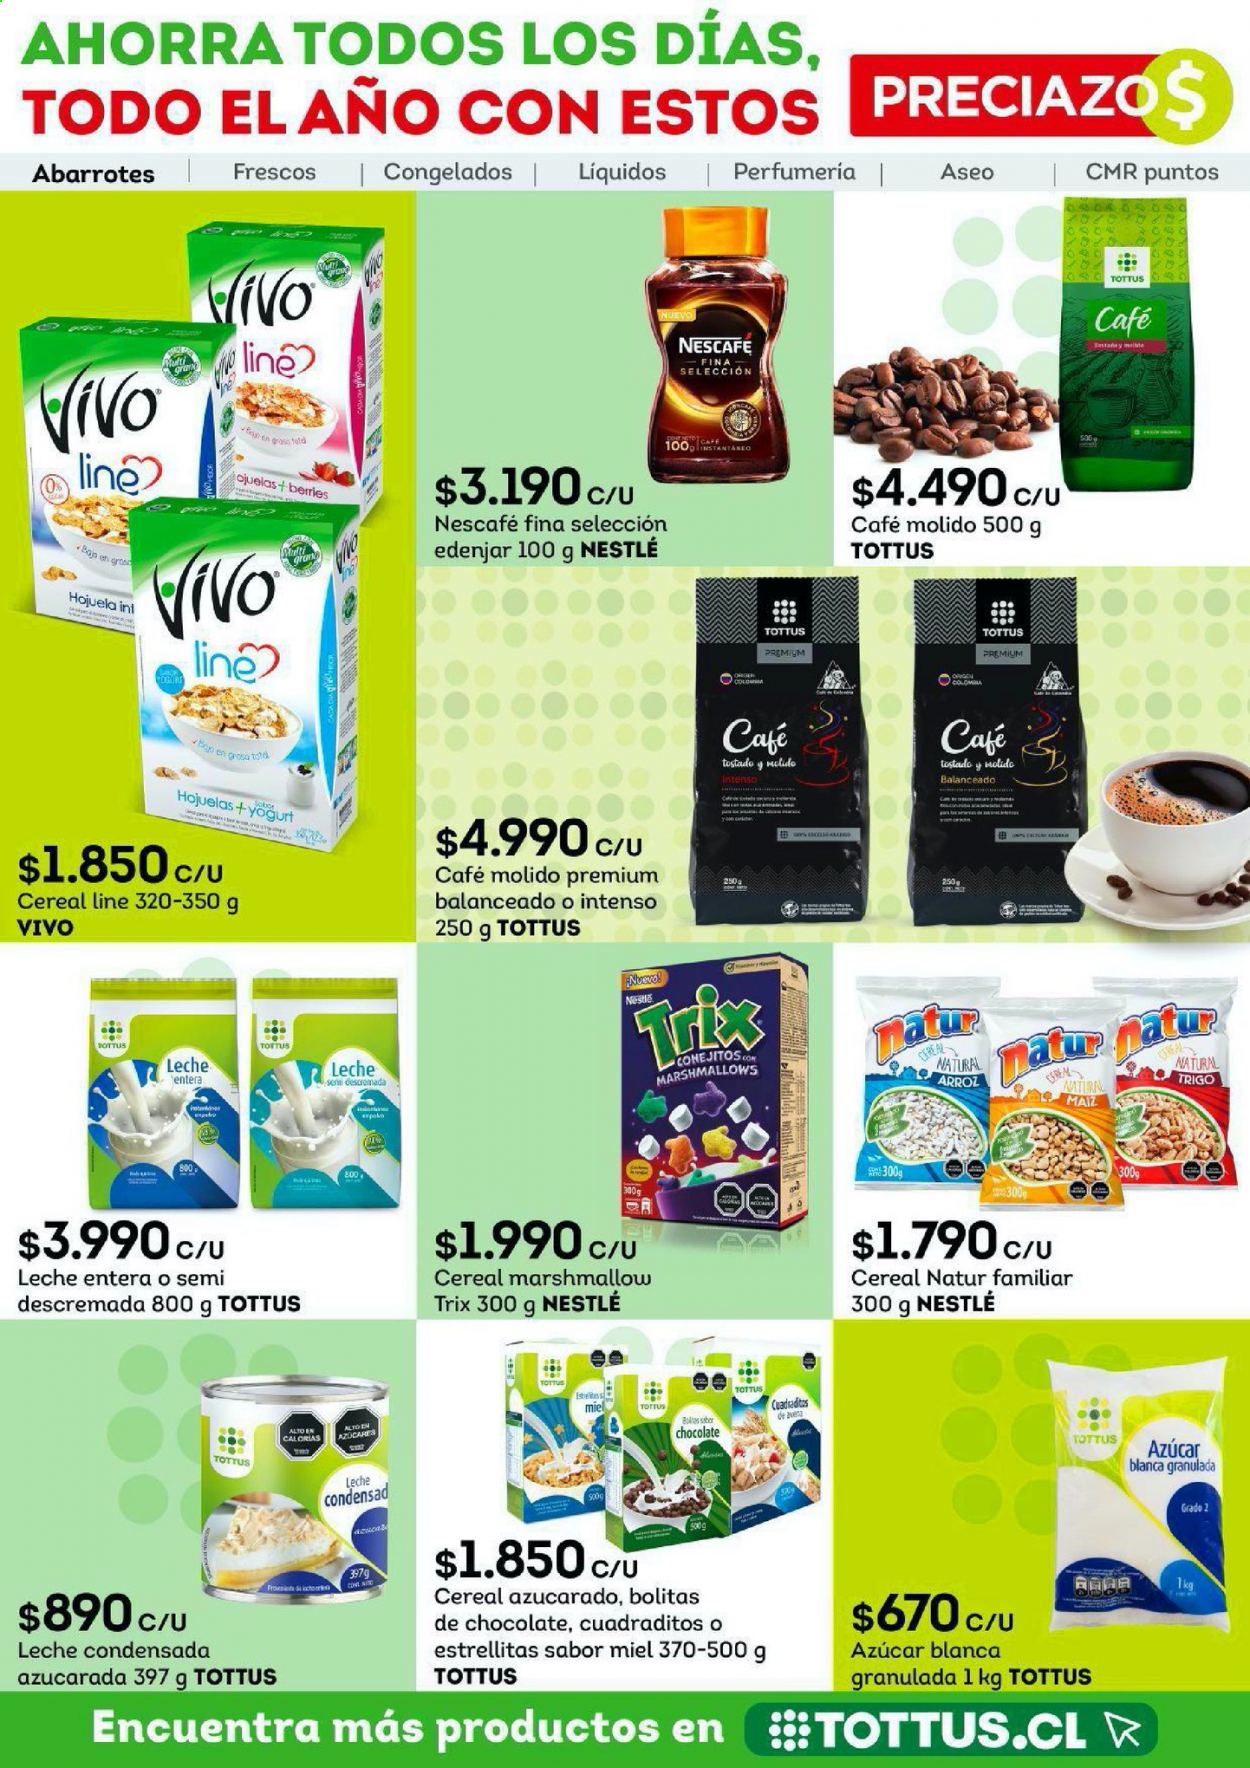 thumbnail - Catálogo Tottus - 15.07.2021 - 29.07.2021 - Ventas - leche, leche entera, marshmallow, Nestlé, azúcar, cereales, arroz, café, café molido, Nescafé. Página 5.